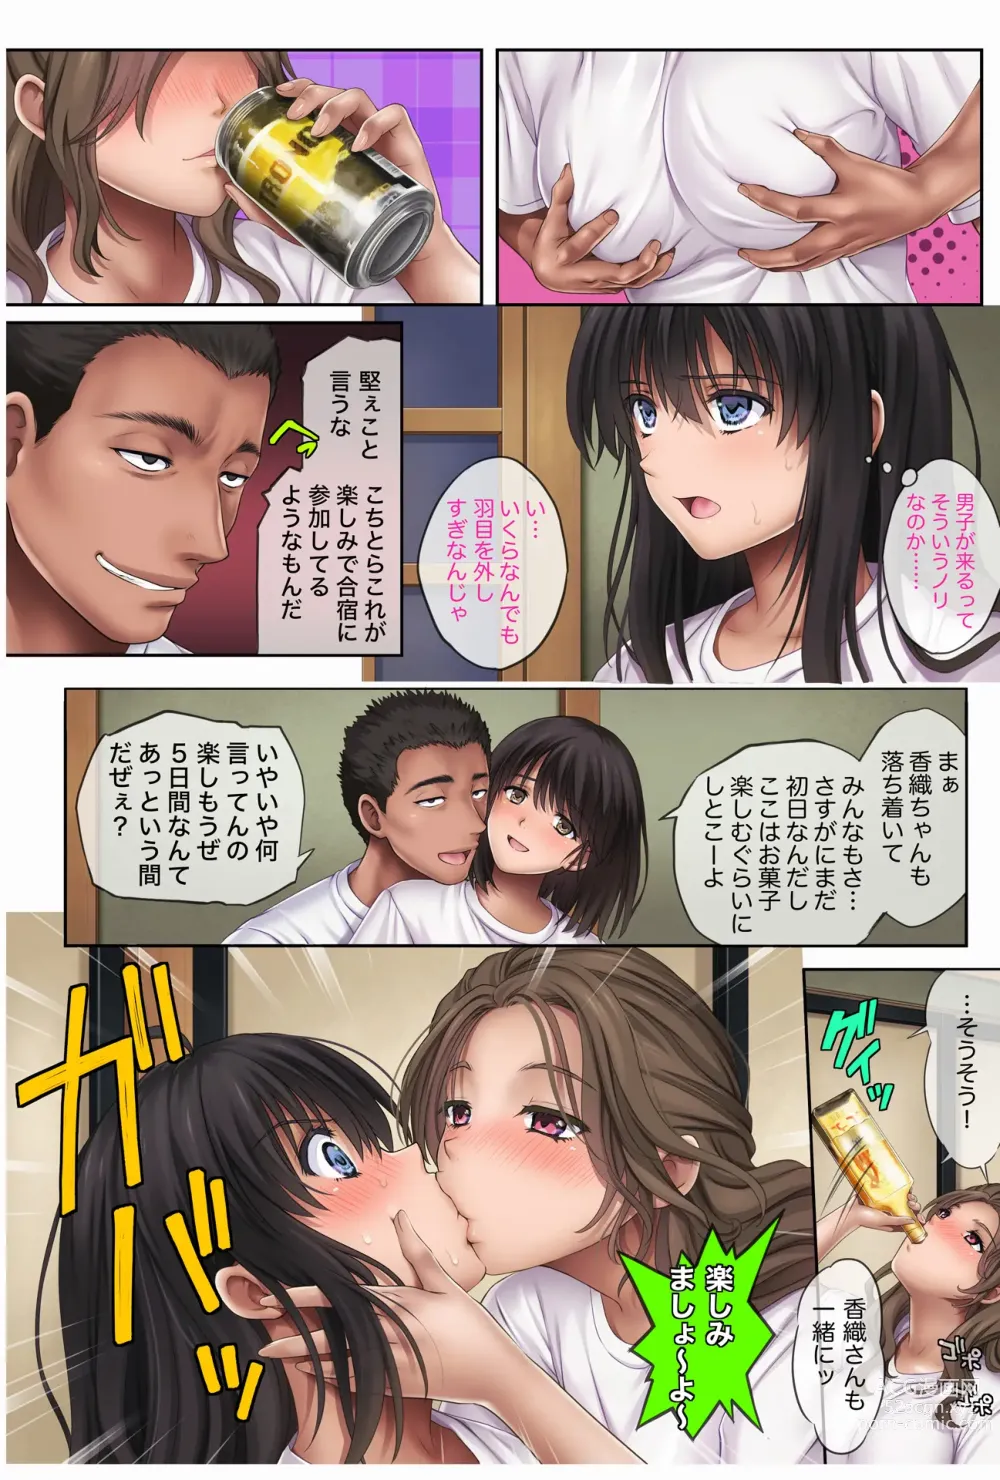 Page 23 of doujinshi Midareuchi3